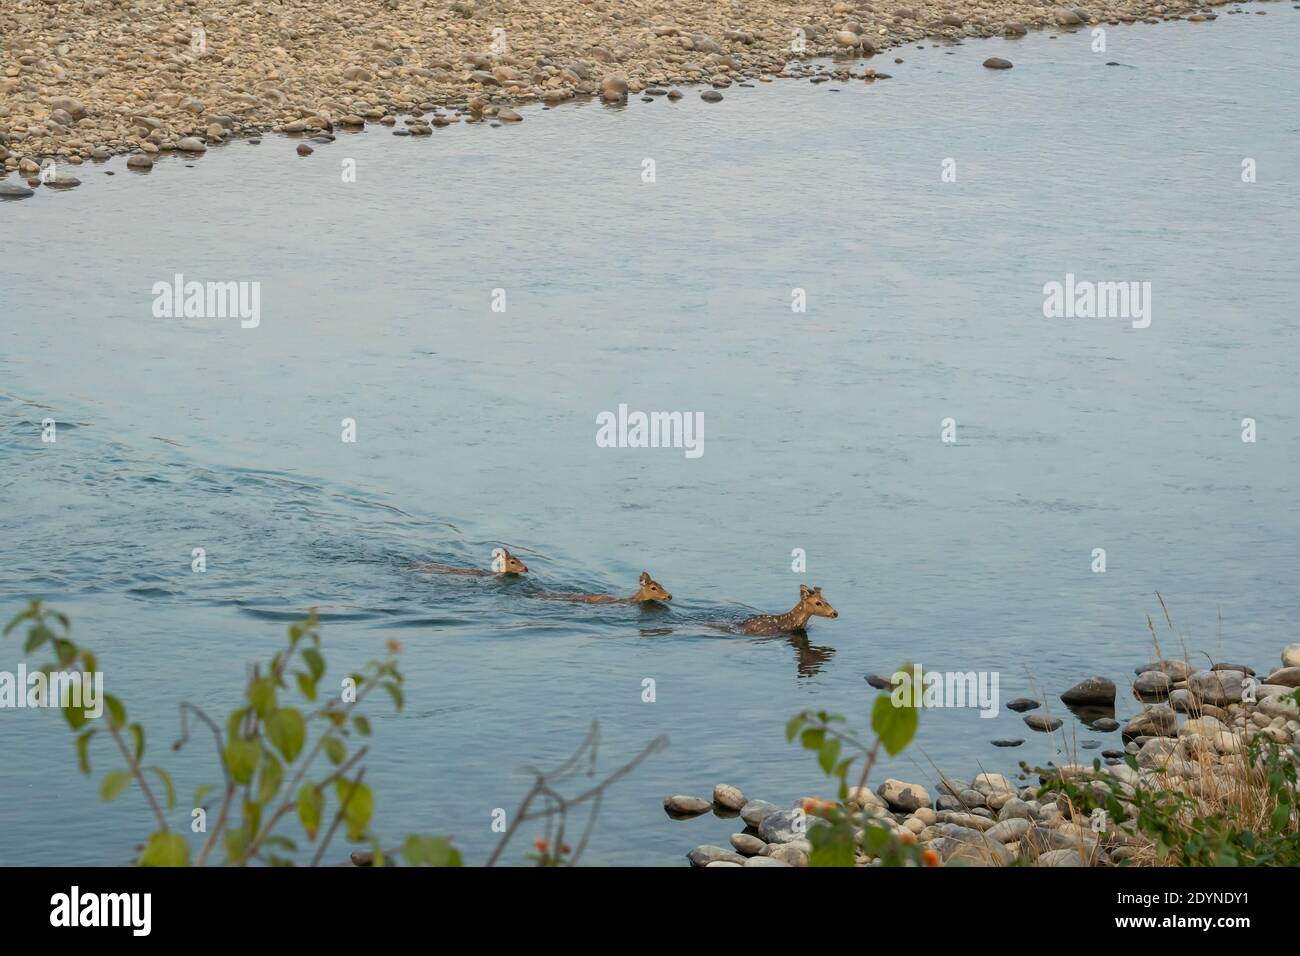 Gefleckte Hirsche oder Chital oder Achse Herde schwimmen in Wasser zum überqueren ramganga Fluss in dhikala Zone von jim corbett Nationalpark uttarakhand indien Stockfoto